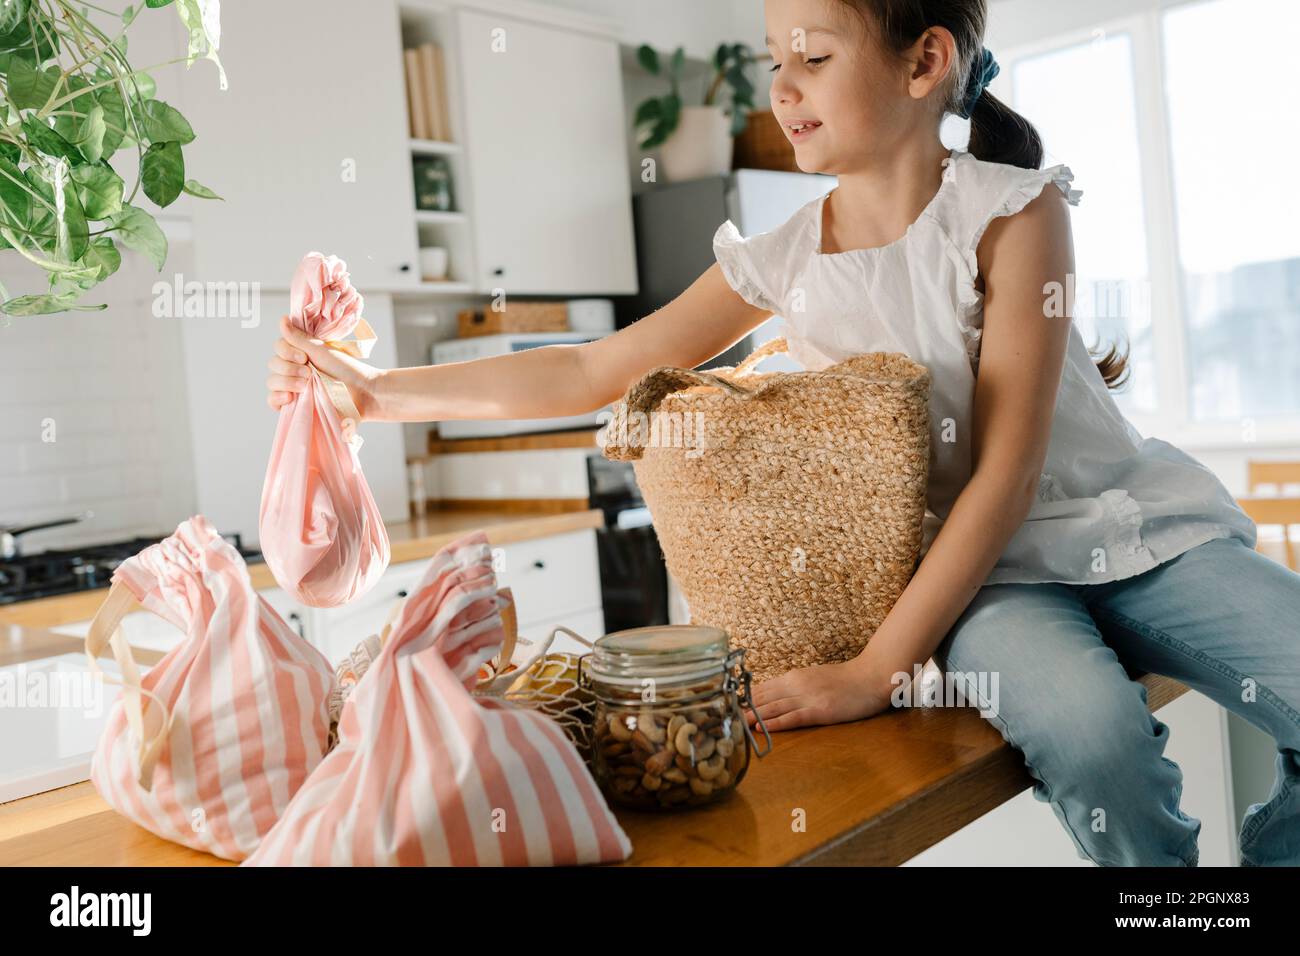 Fille avec des sacs réutilisables assis sur l'îlot de cuisine Banque D'Images